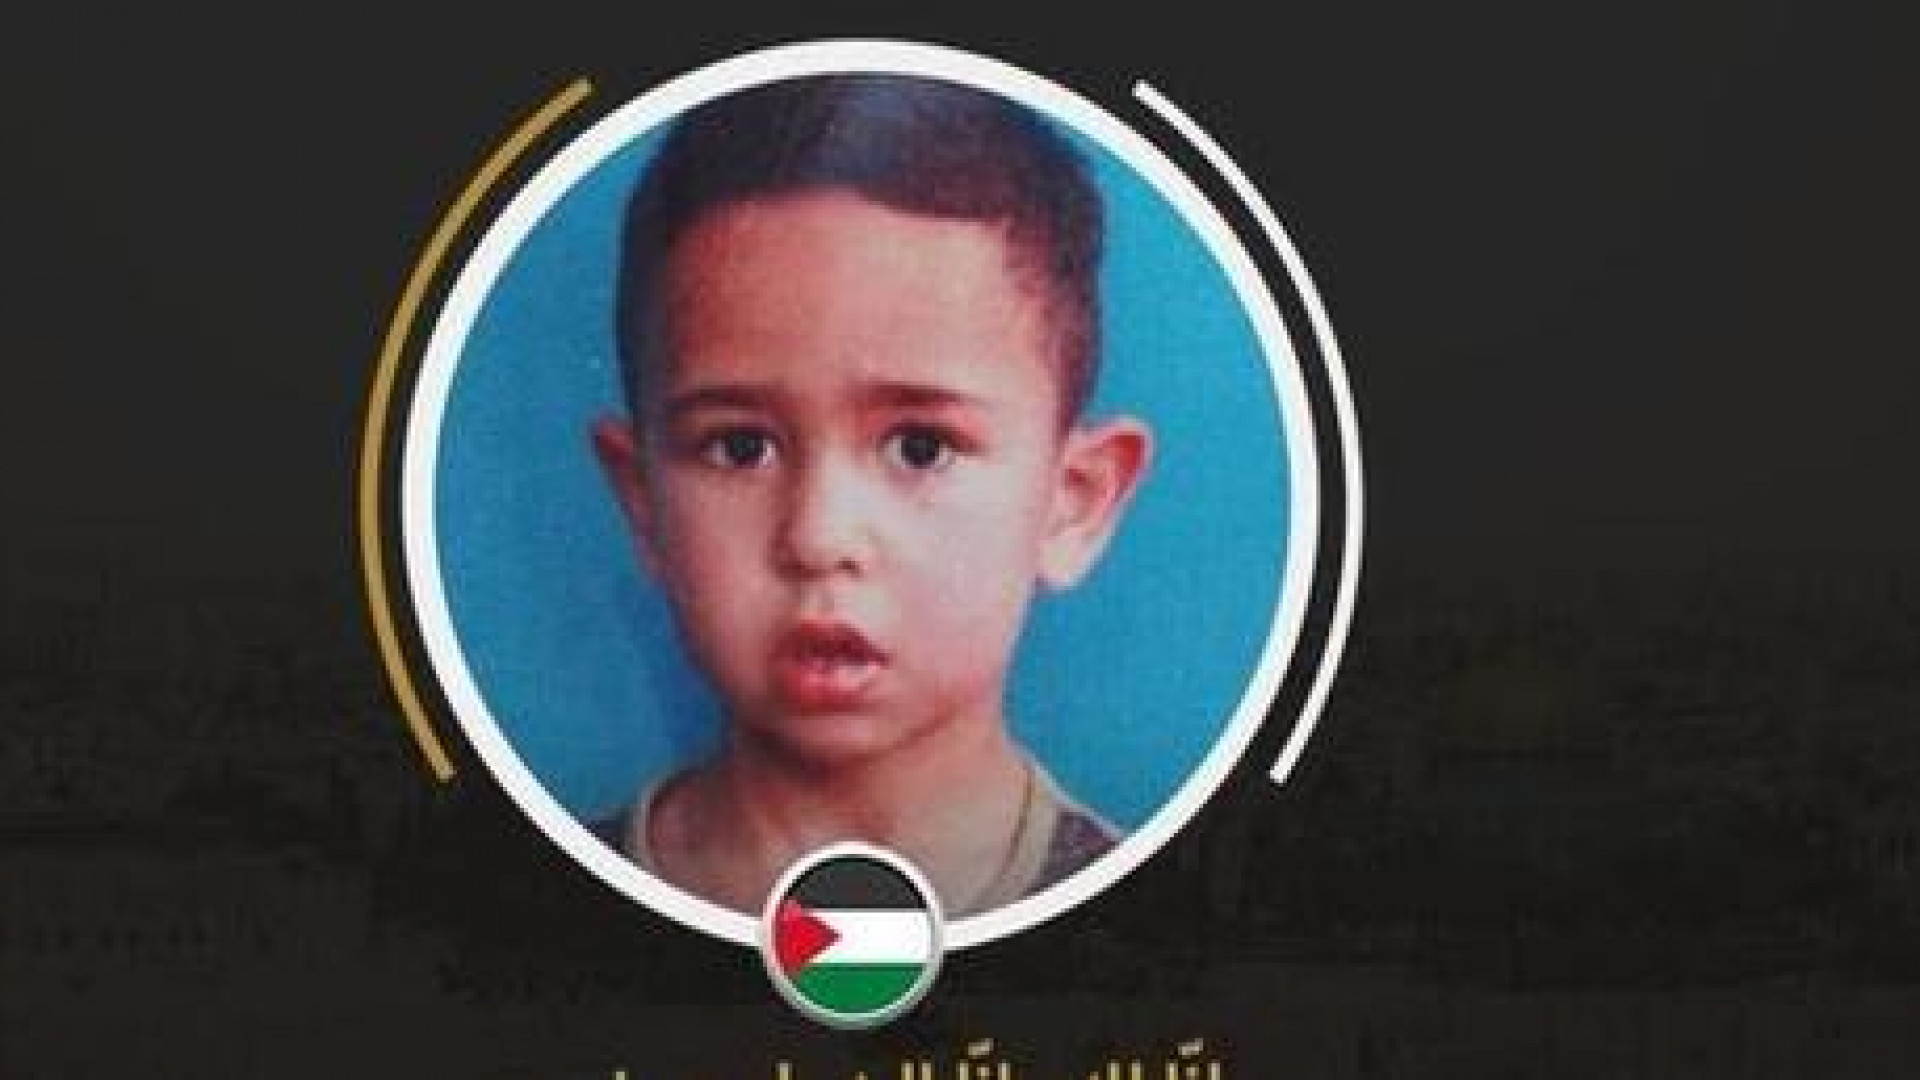 Un niño palestino de 7 años última víctima fatal del régimen israelí